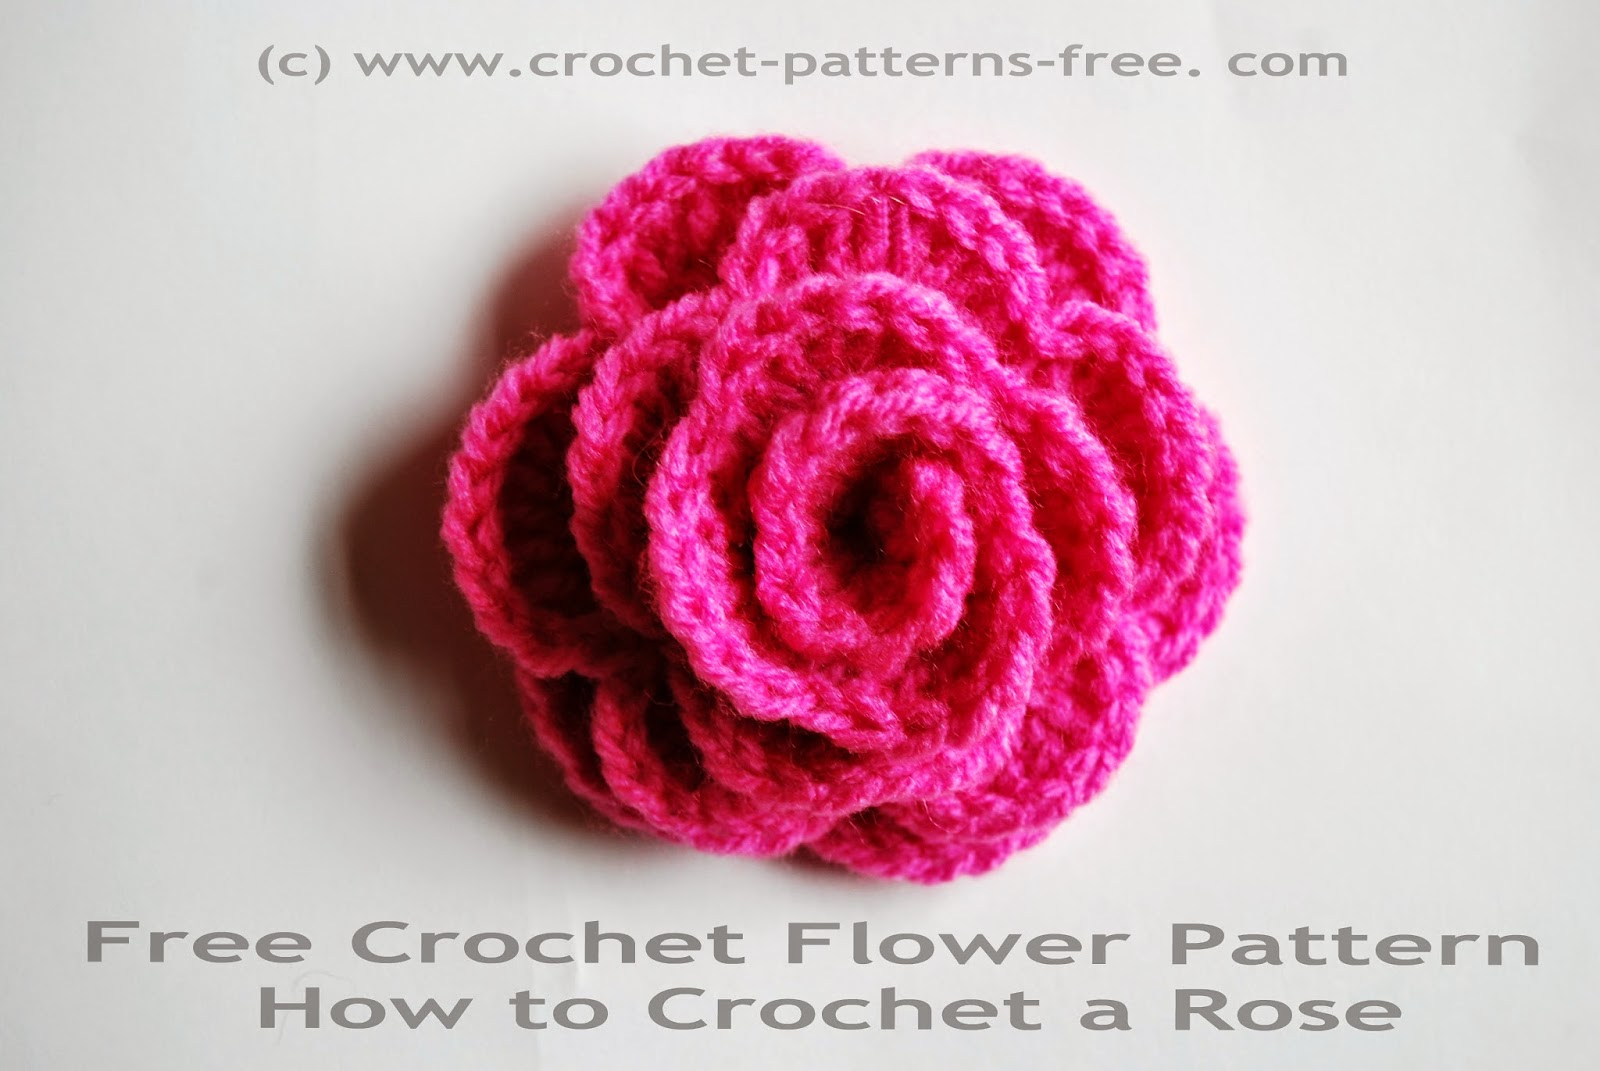 Crochet Sunflower Pattern Free Crochet Patterns And Designs Lisaauch Free Crochet Flower